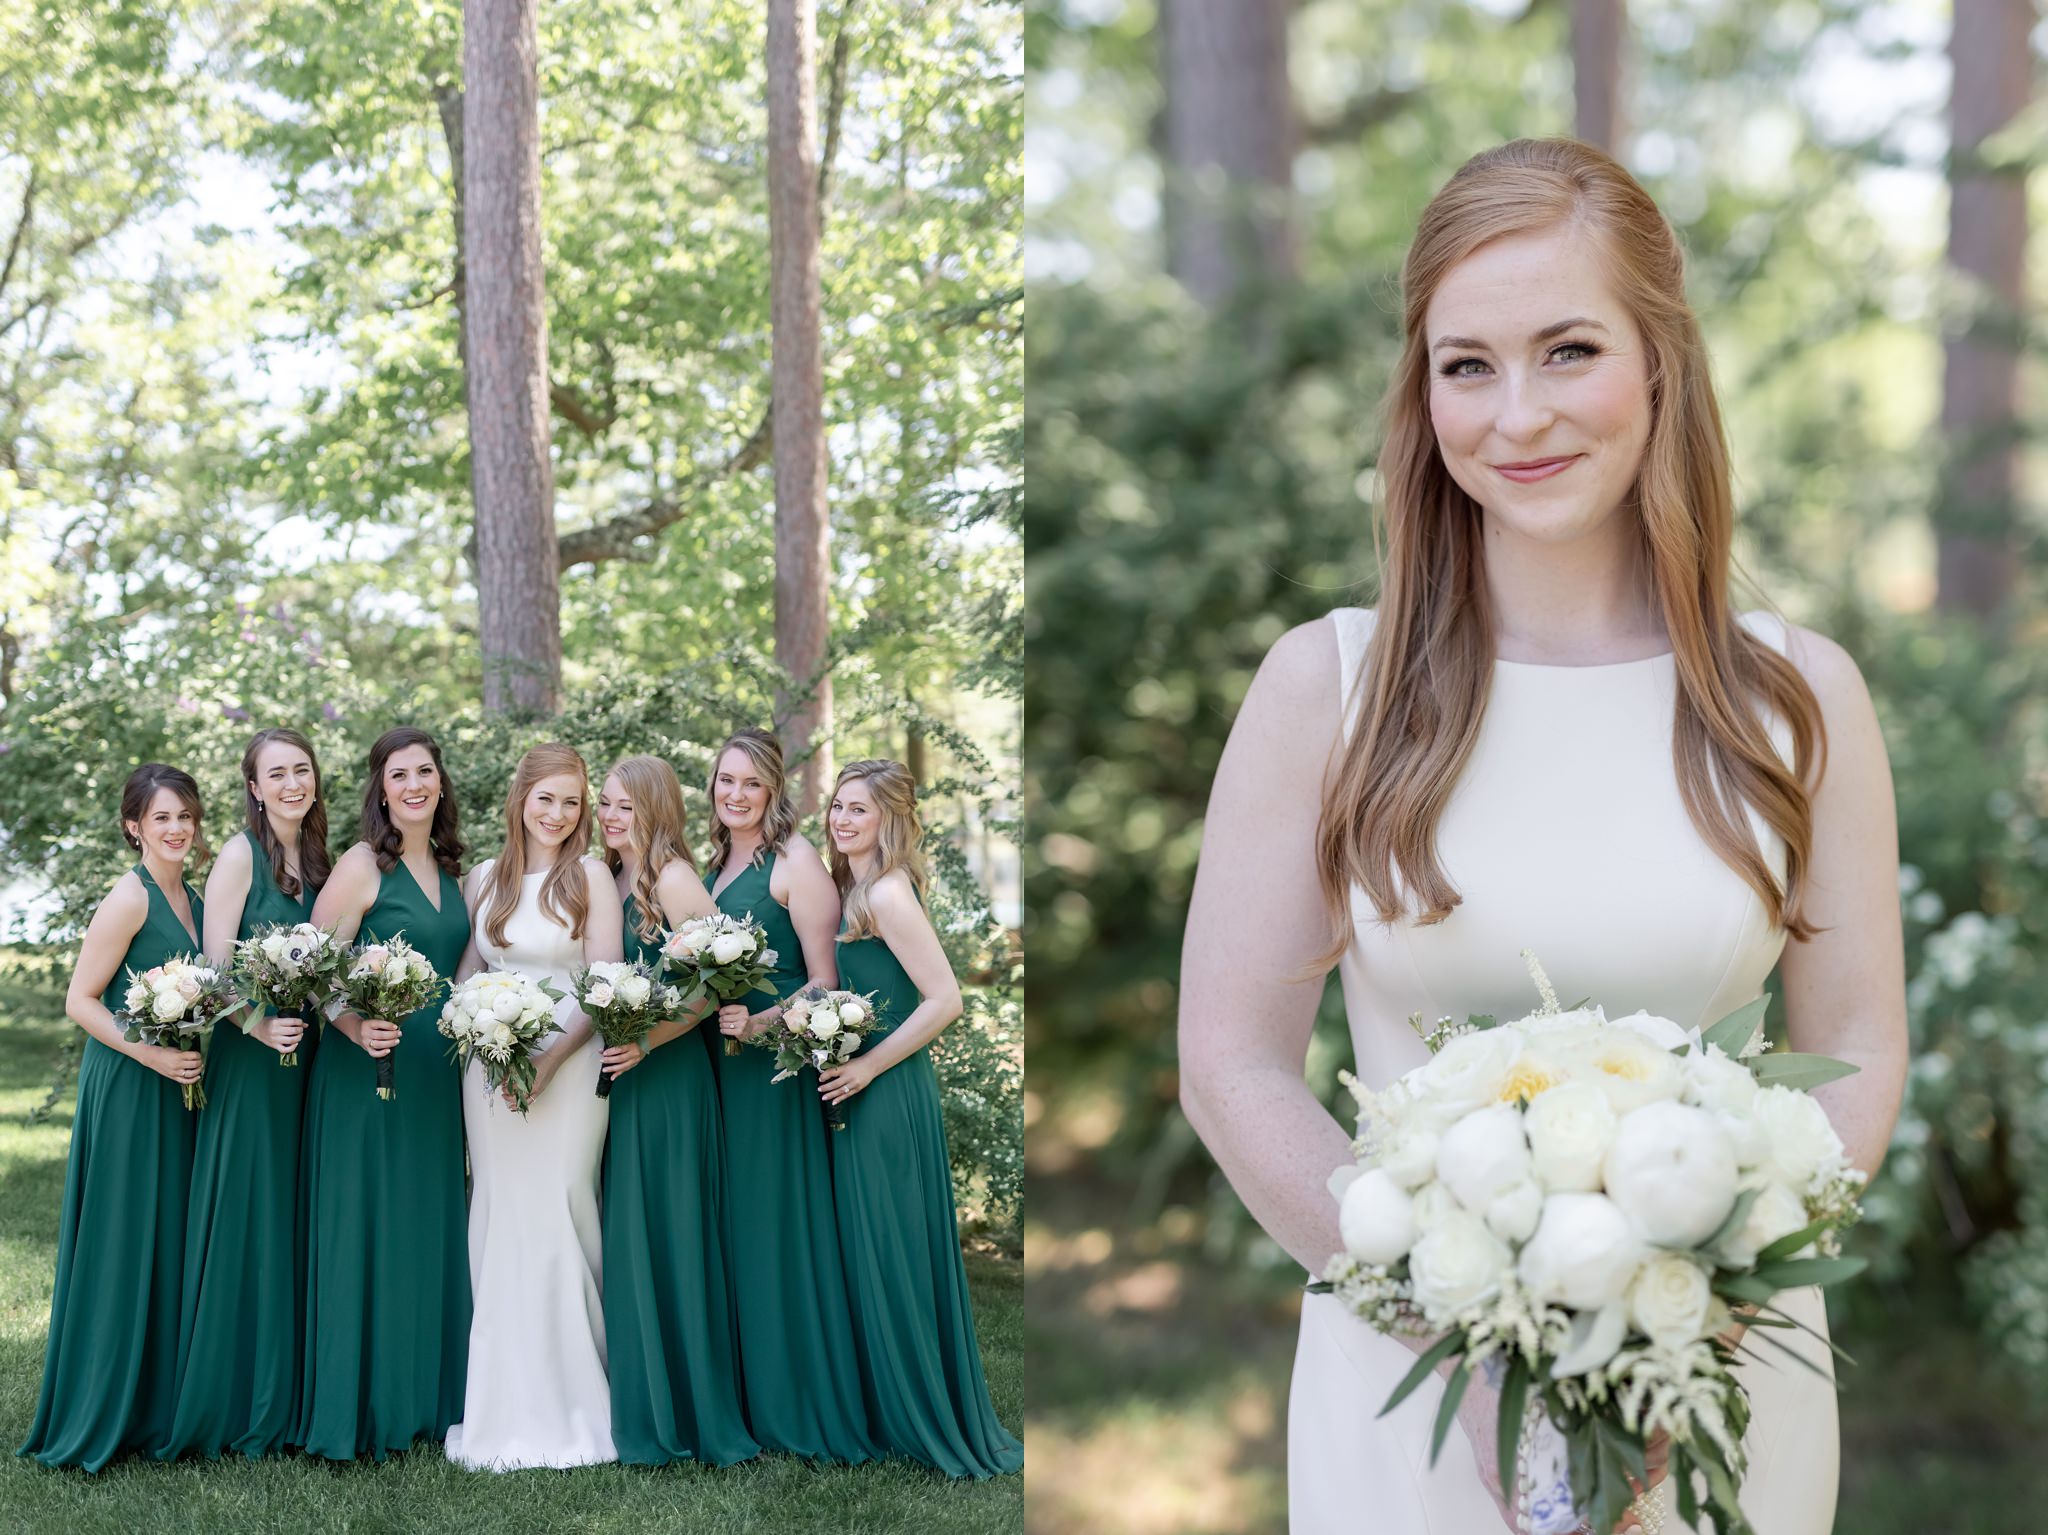 emerald-green-bridesmaid-dresses